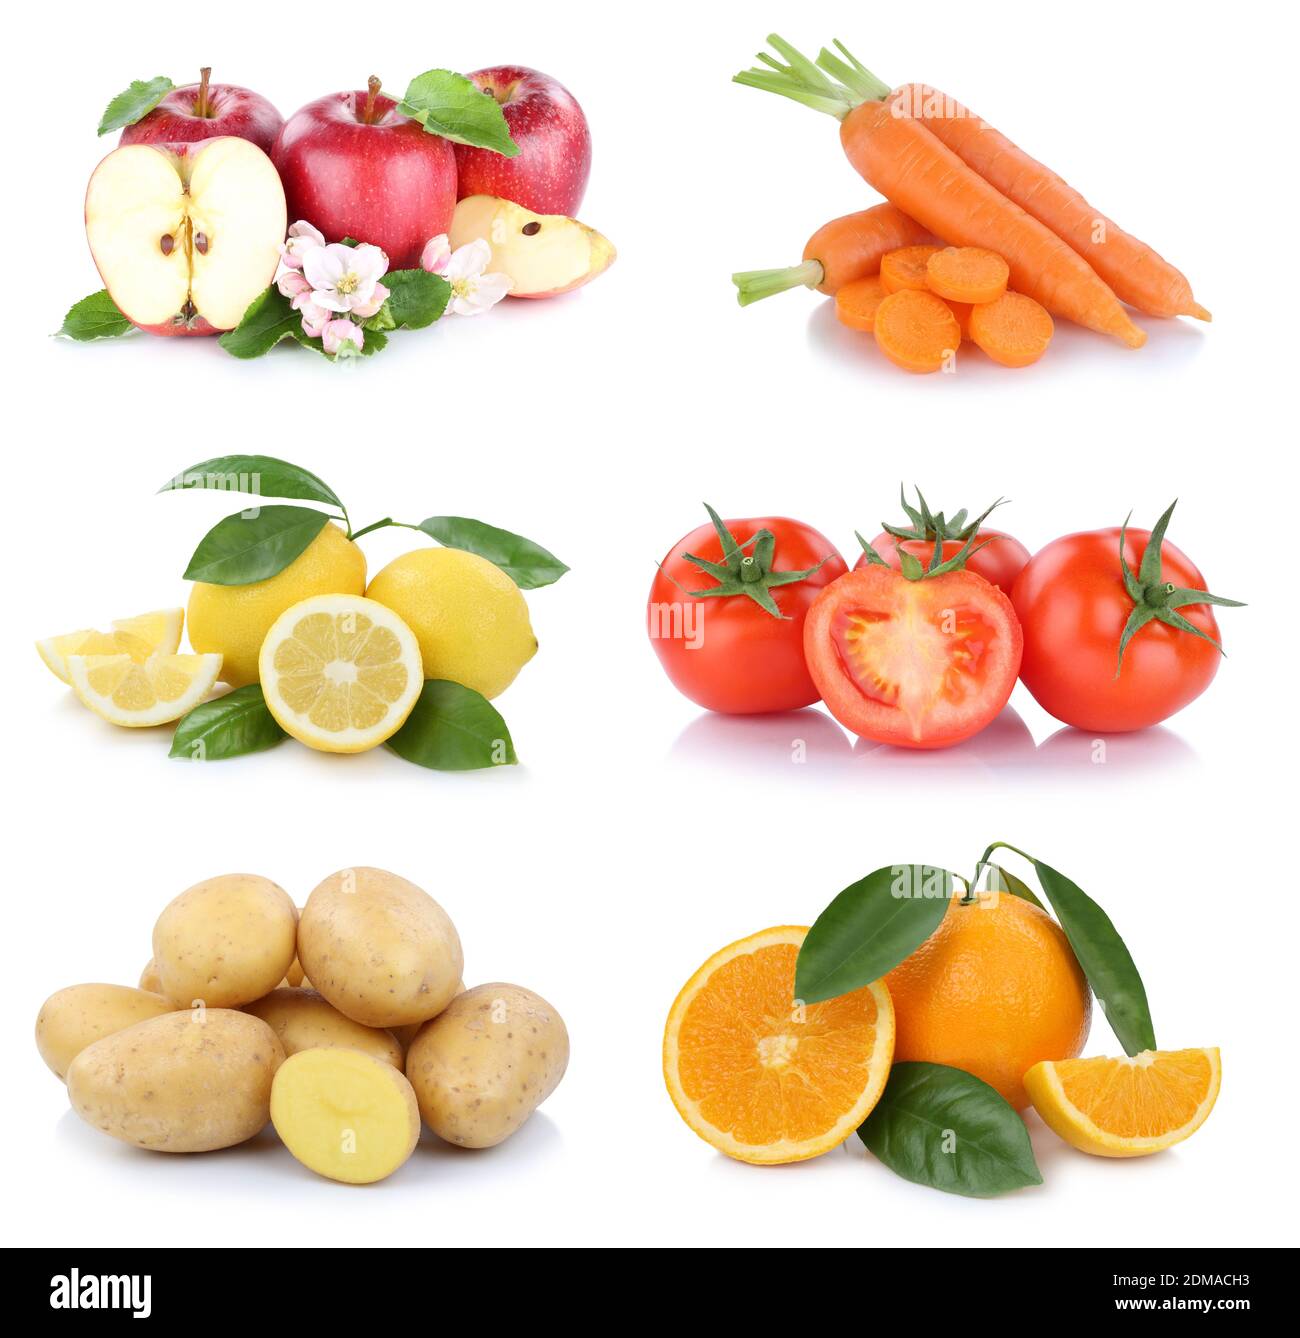 Obst und Gemüse Früchte Sammlung Äpfel, Orangen Tomaten Essen Freisteller vor einem weissen Hintergrund Foto Stock